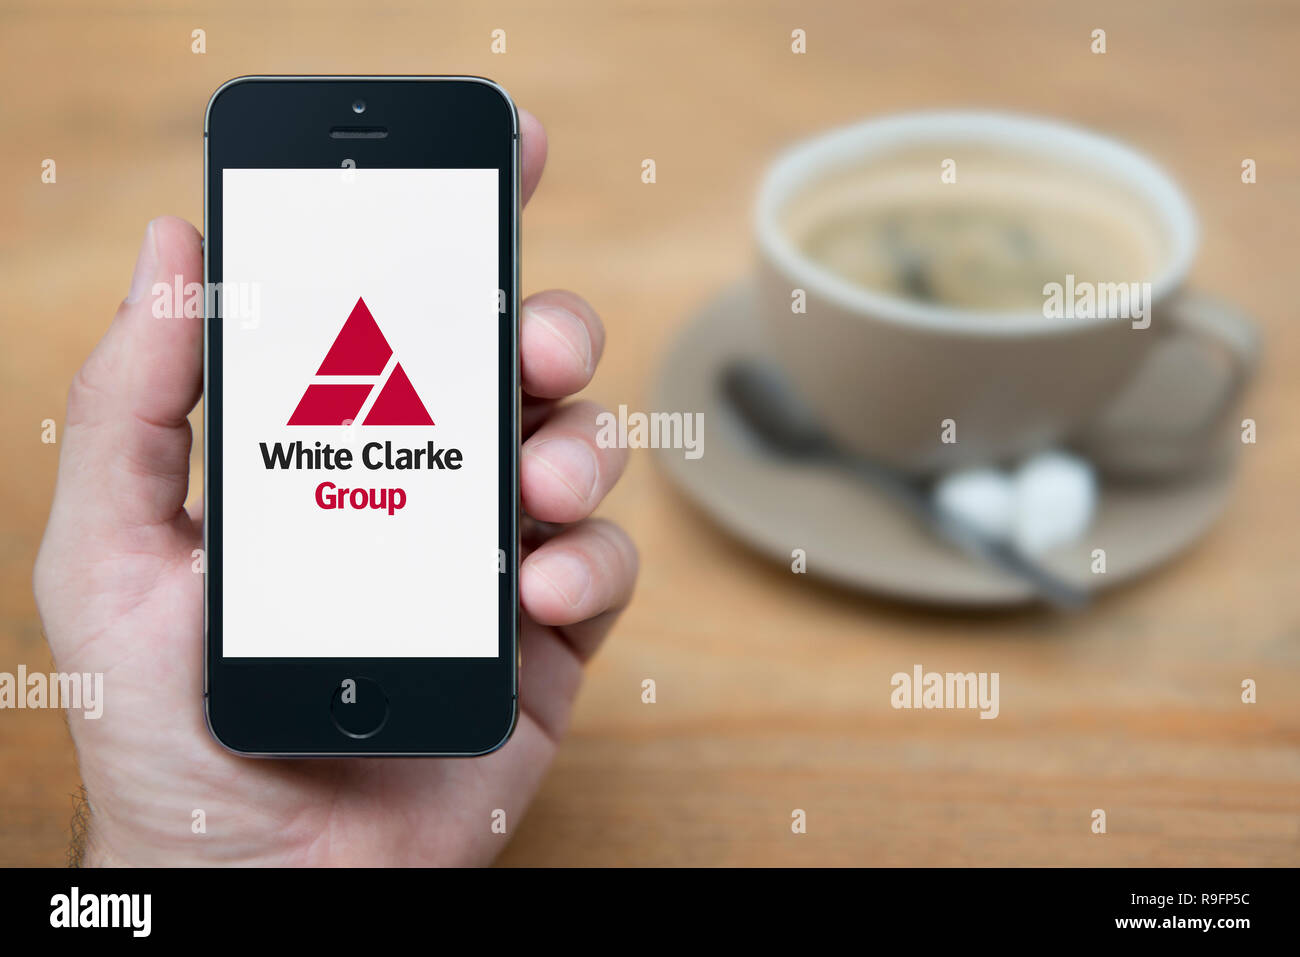 Un homme se penche sur son iPhone qui affiche le logo du groupe blanc Clarke (usage éditorial uniquement). Banque D'Images